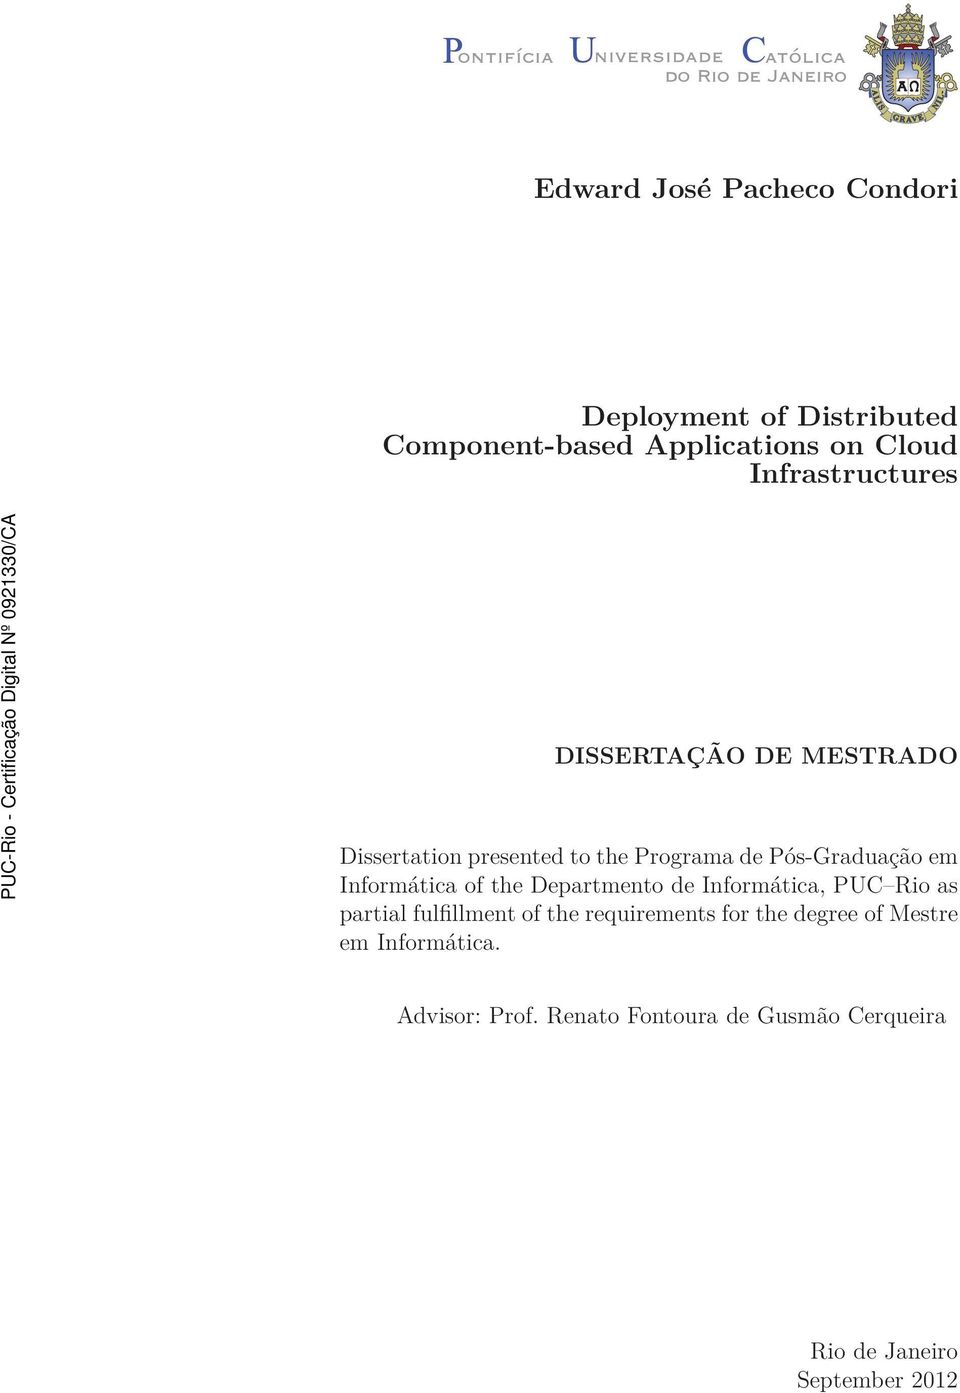 Informática of the Departmento de Informática, PUC Rio as partial fulfillment of the requirements for